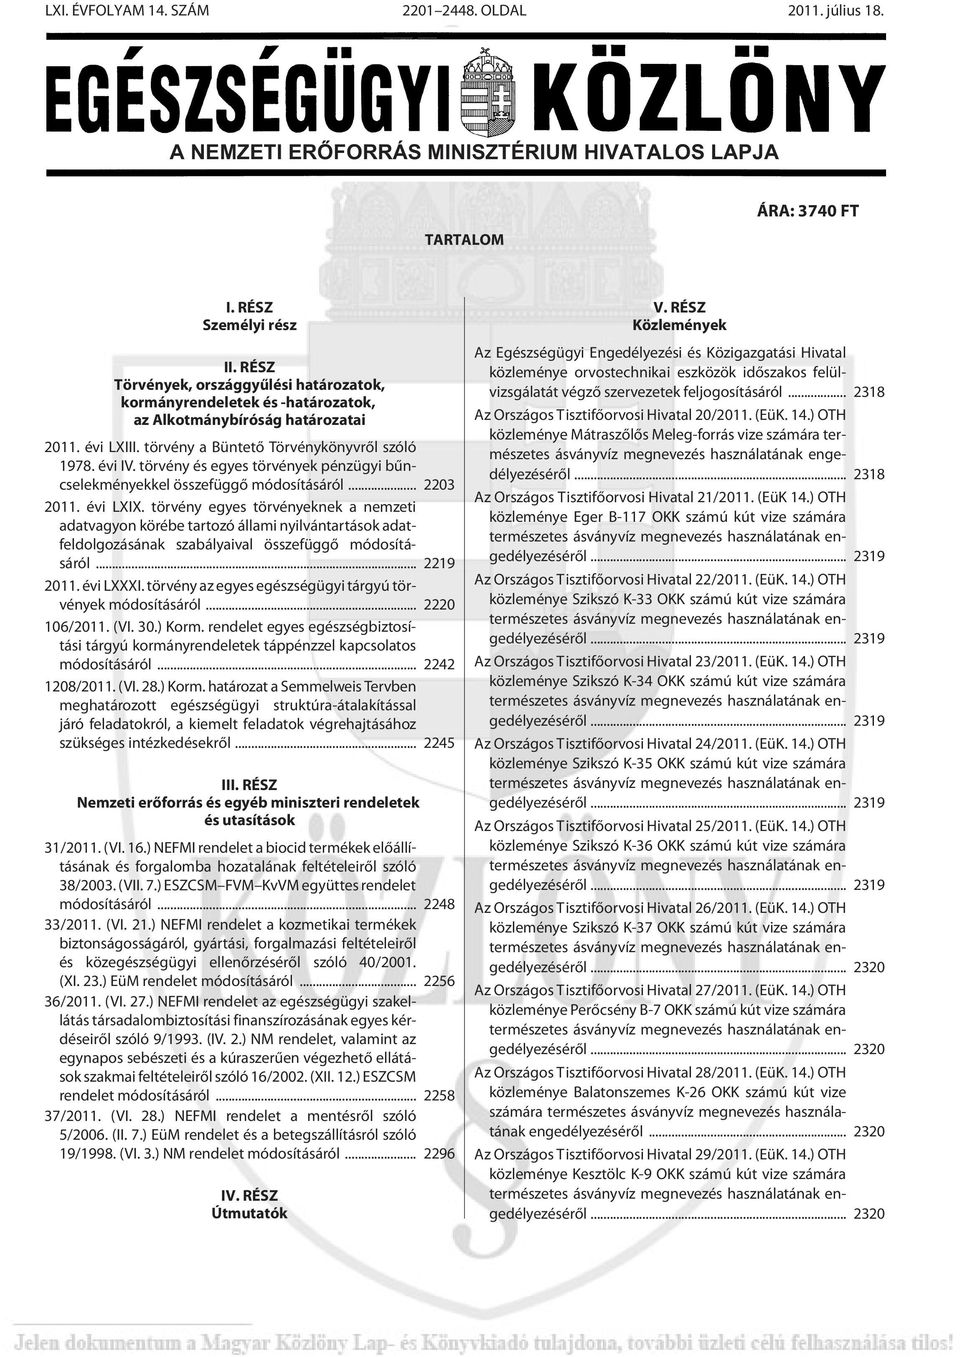 törvény és egyes törvények pénzügyi bûncselekményekkel összefüggõ módosításáról... 2203 2011. évi LXIX.